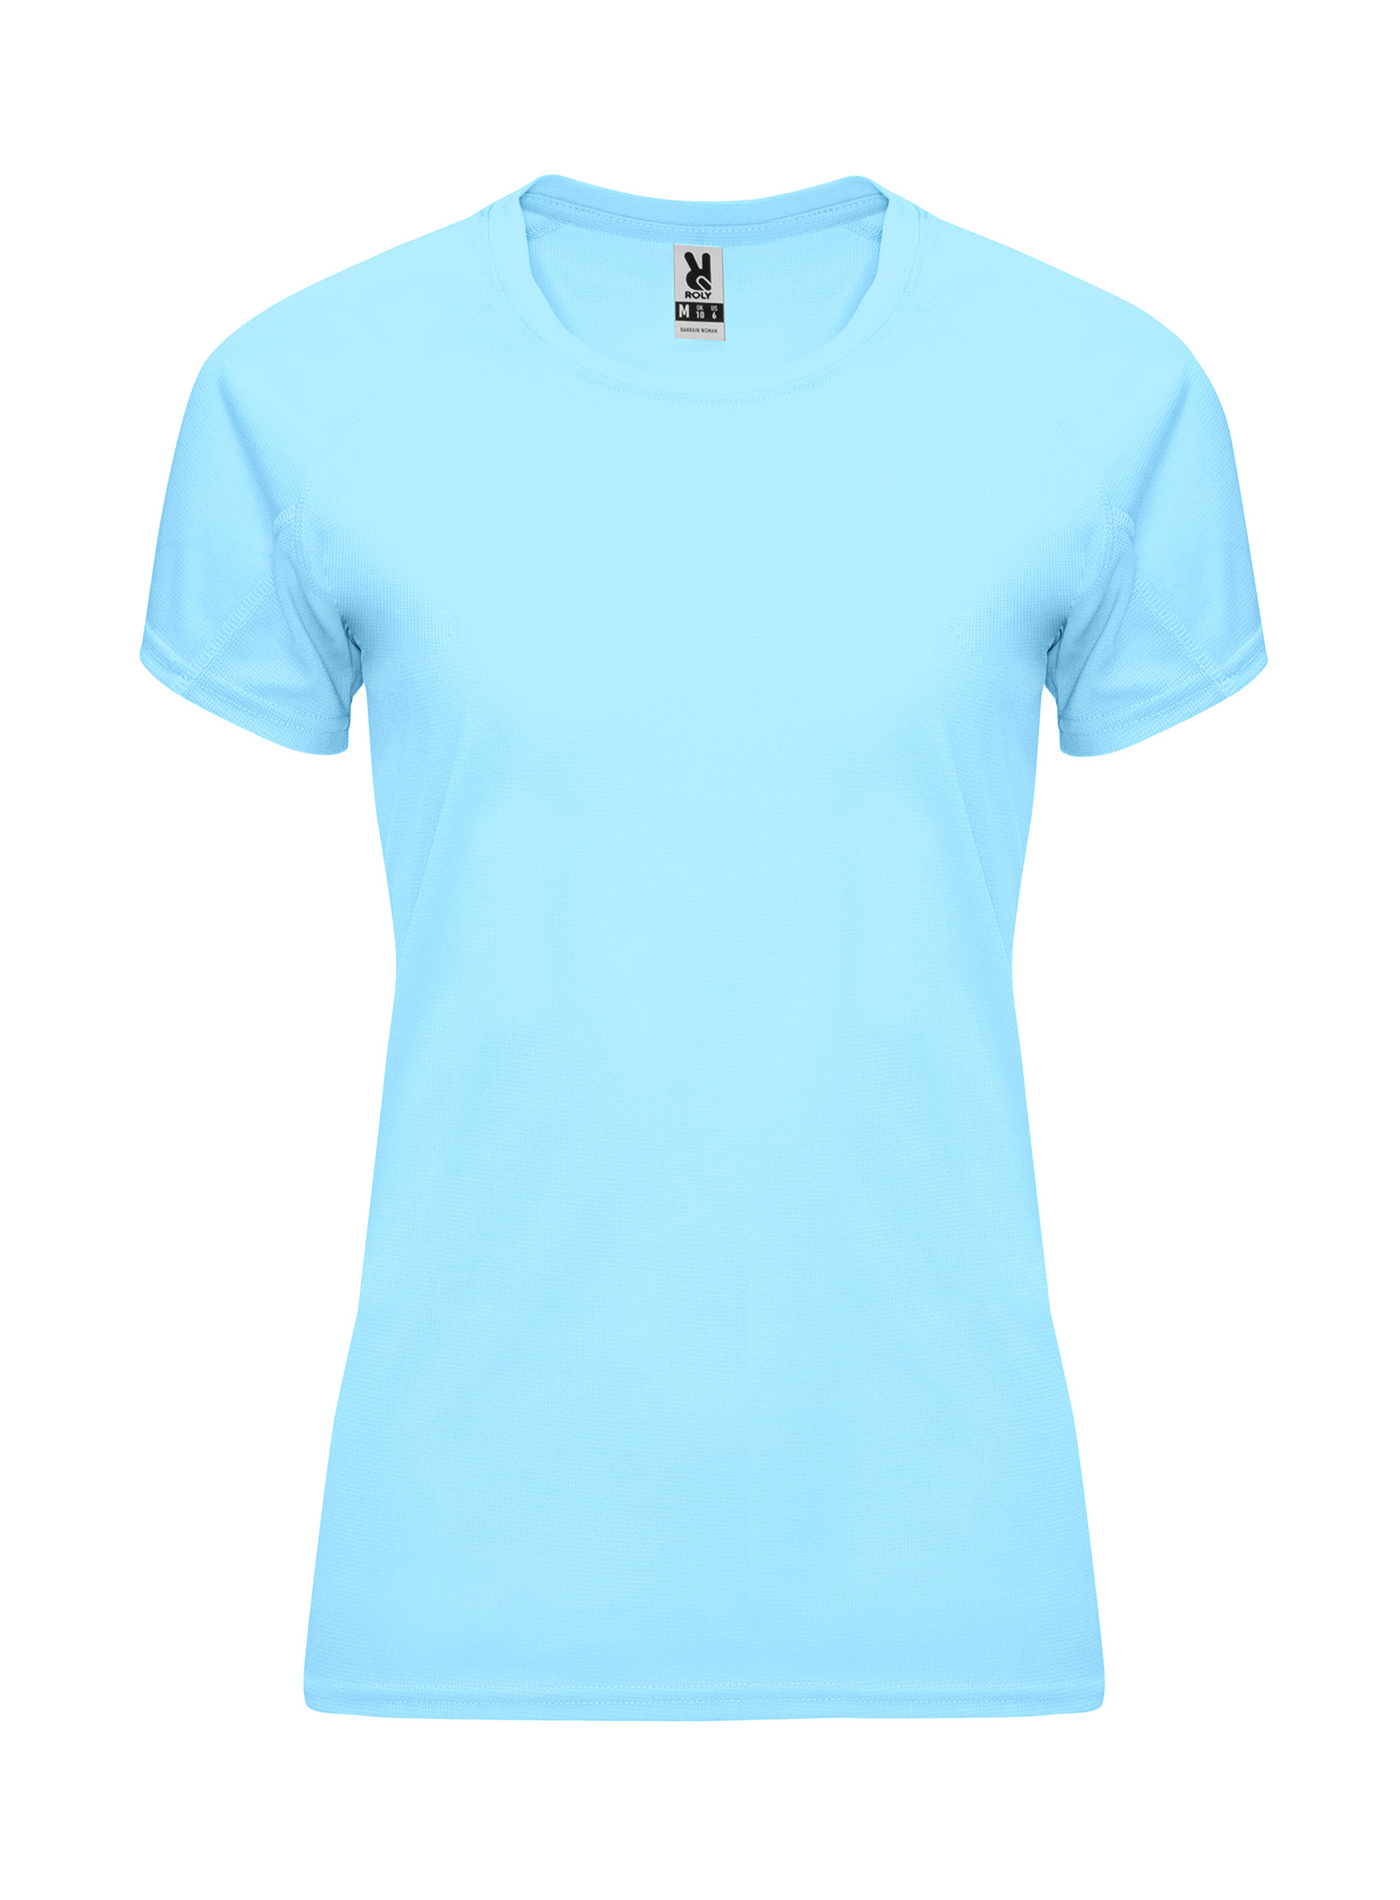 Dámské sportovní tričko Roly Bahrain - Blankytně modrá XL